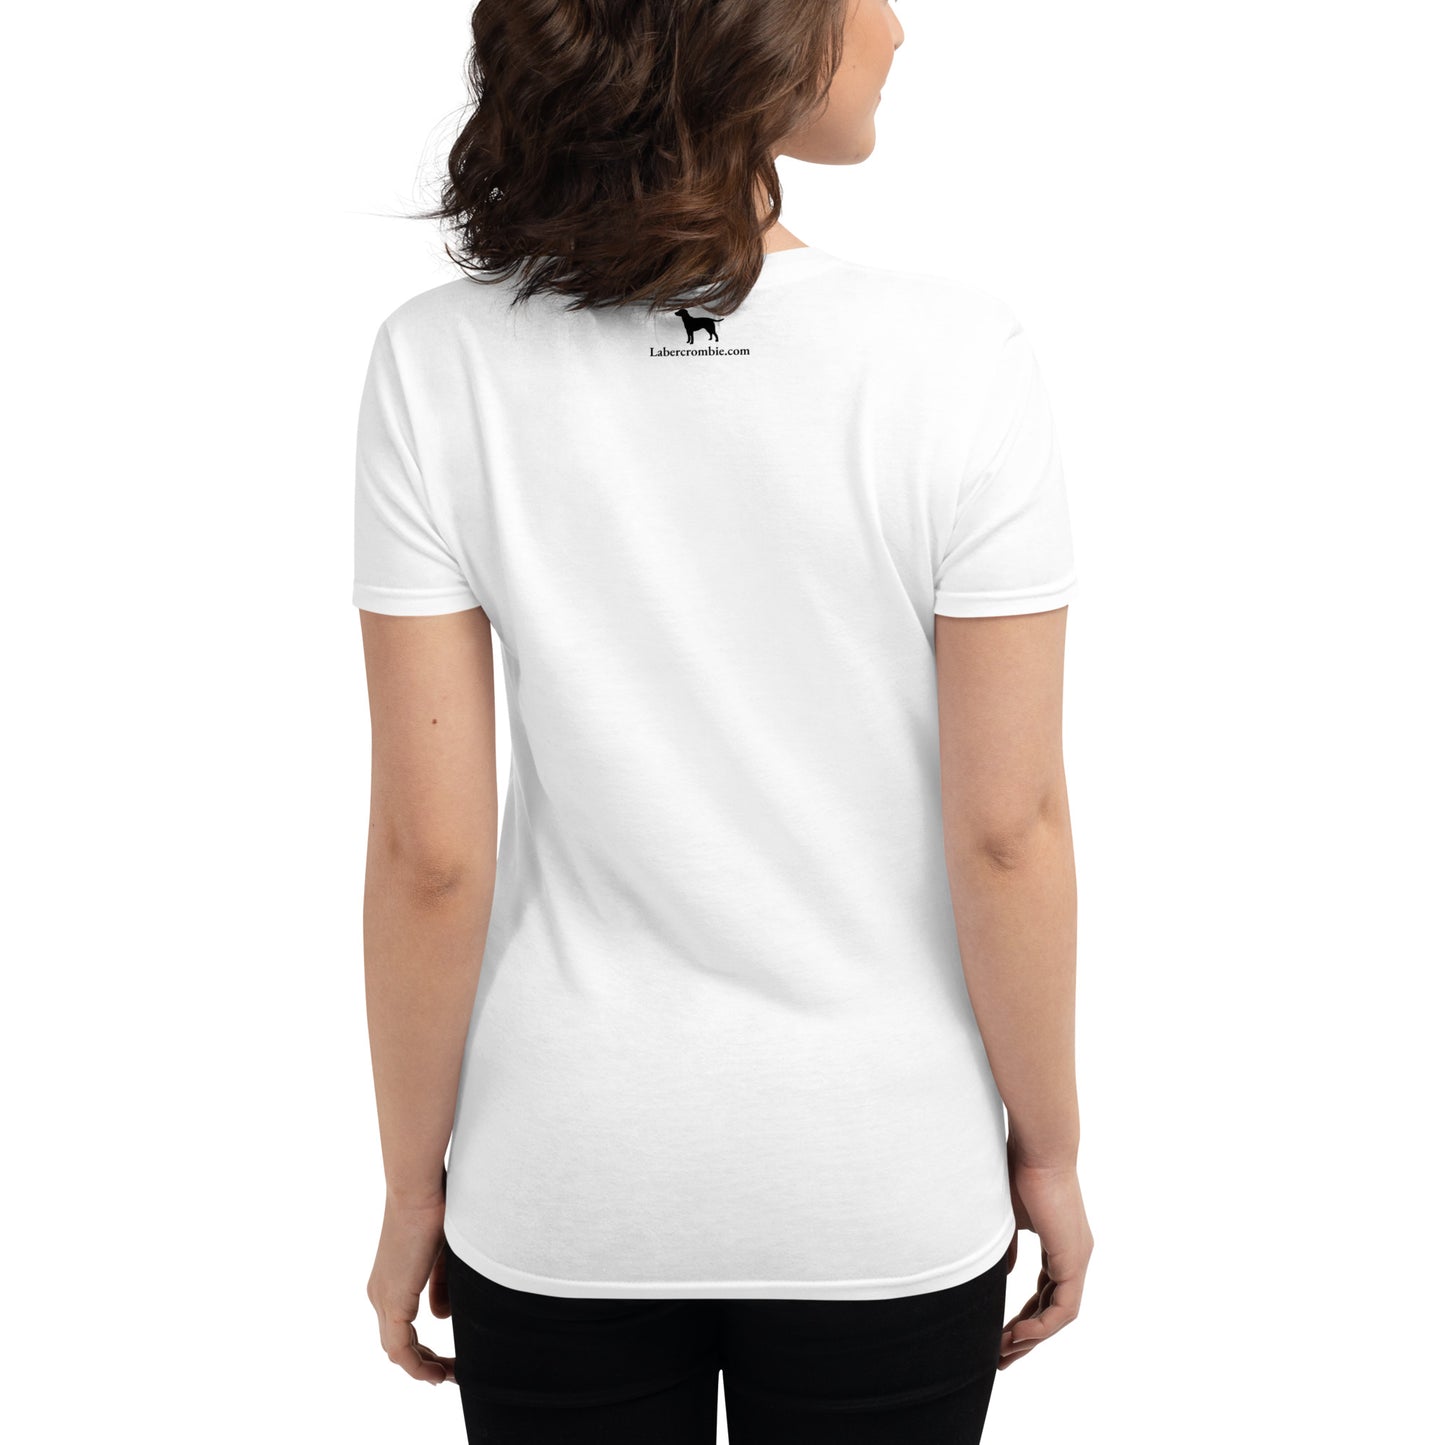 The Labra Doors Women's short sleeve t-shirt